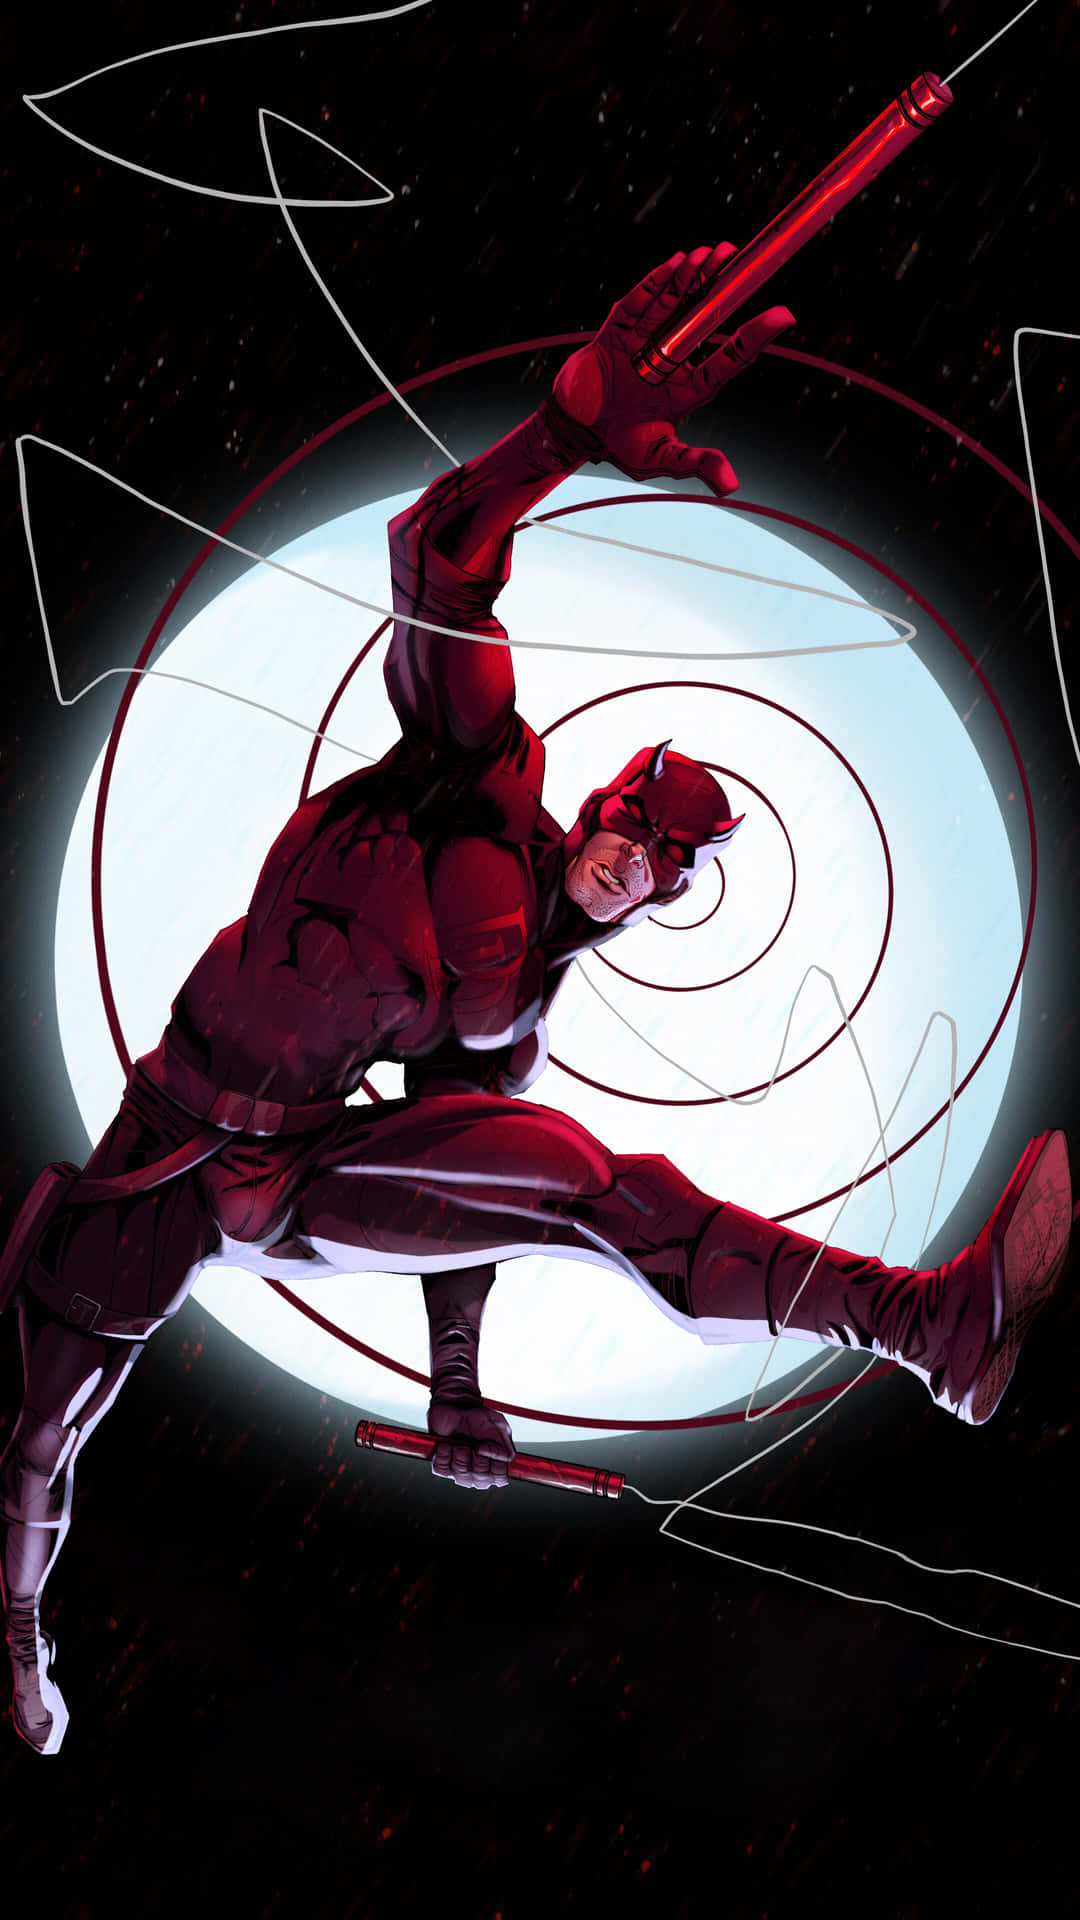 Un'illustrazionedi Daredevil, Il Supereroe Marvel.